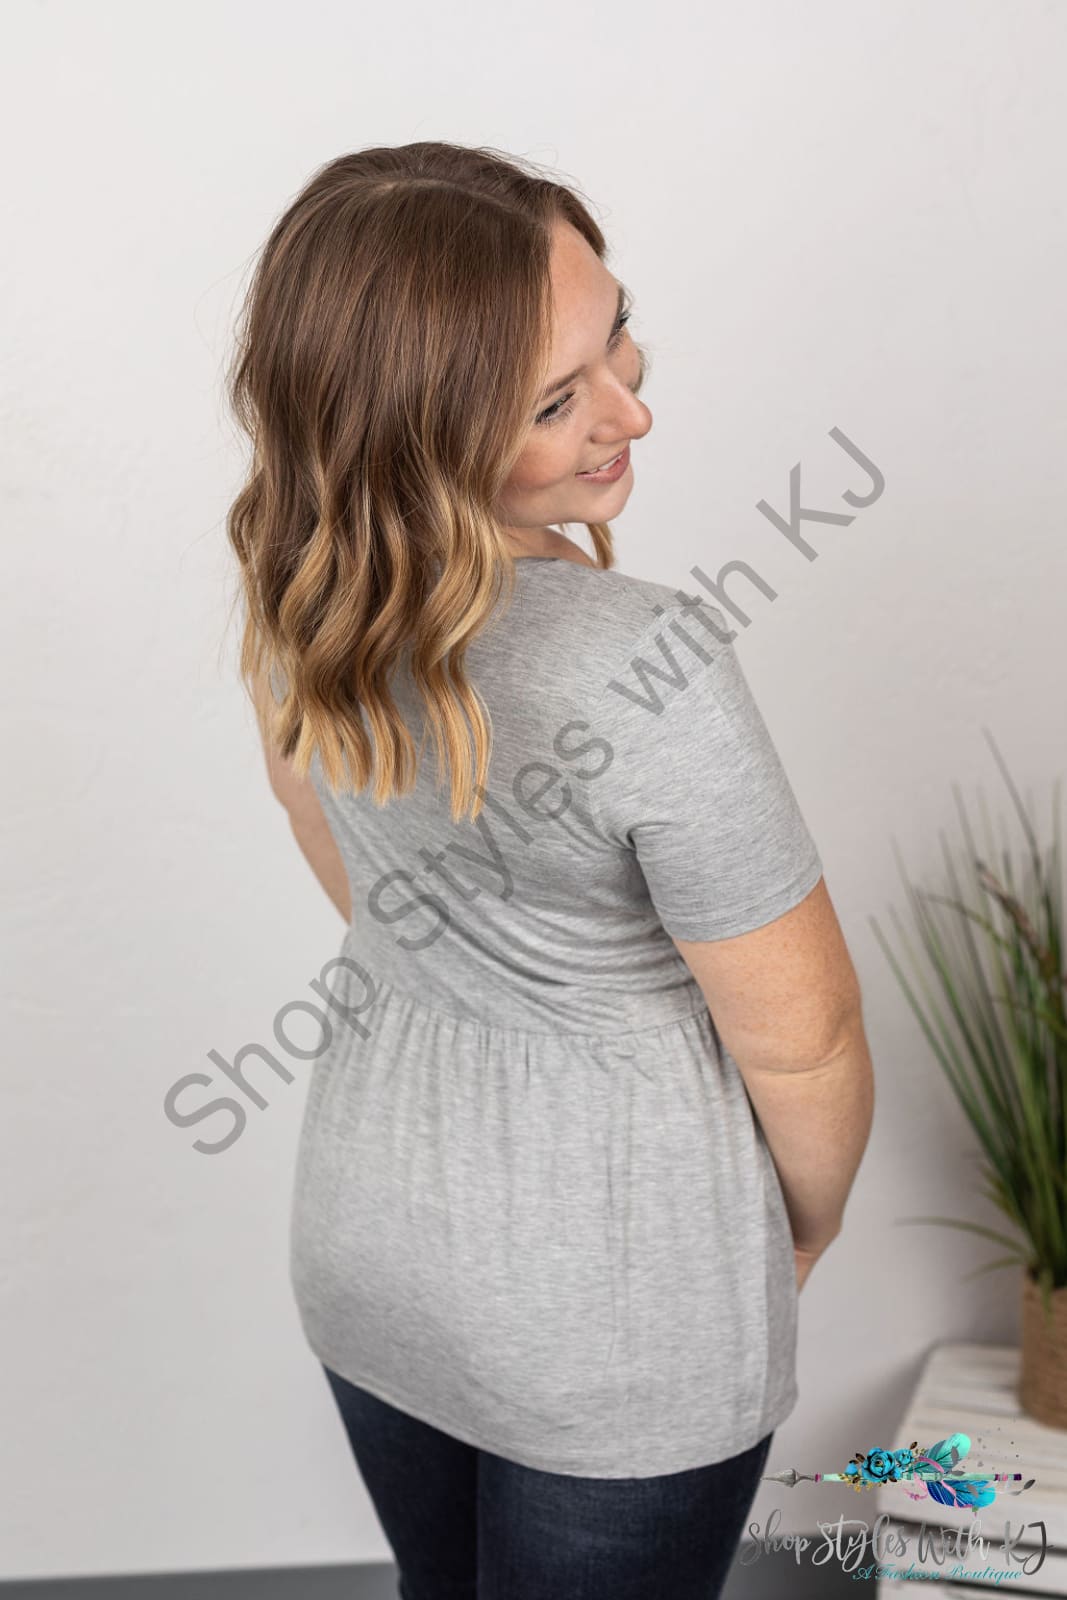 Sarah Ruffle Top - Light Grey Tops